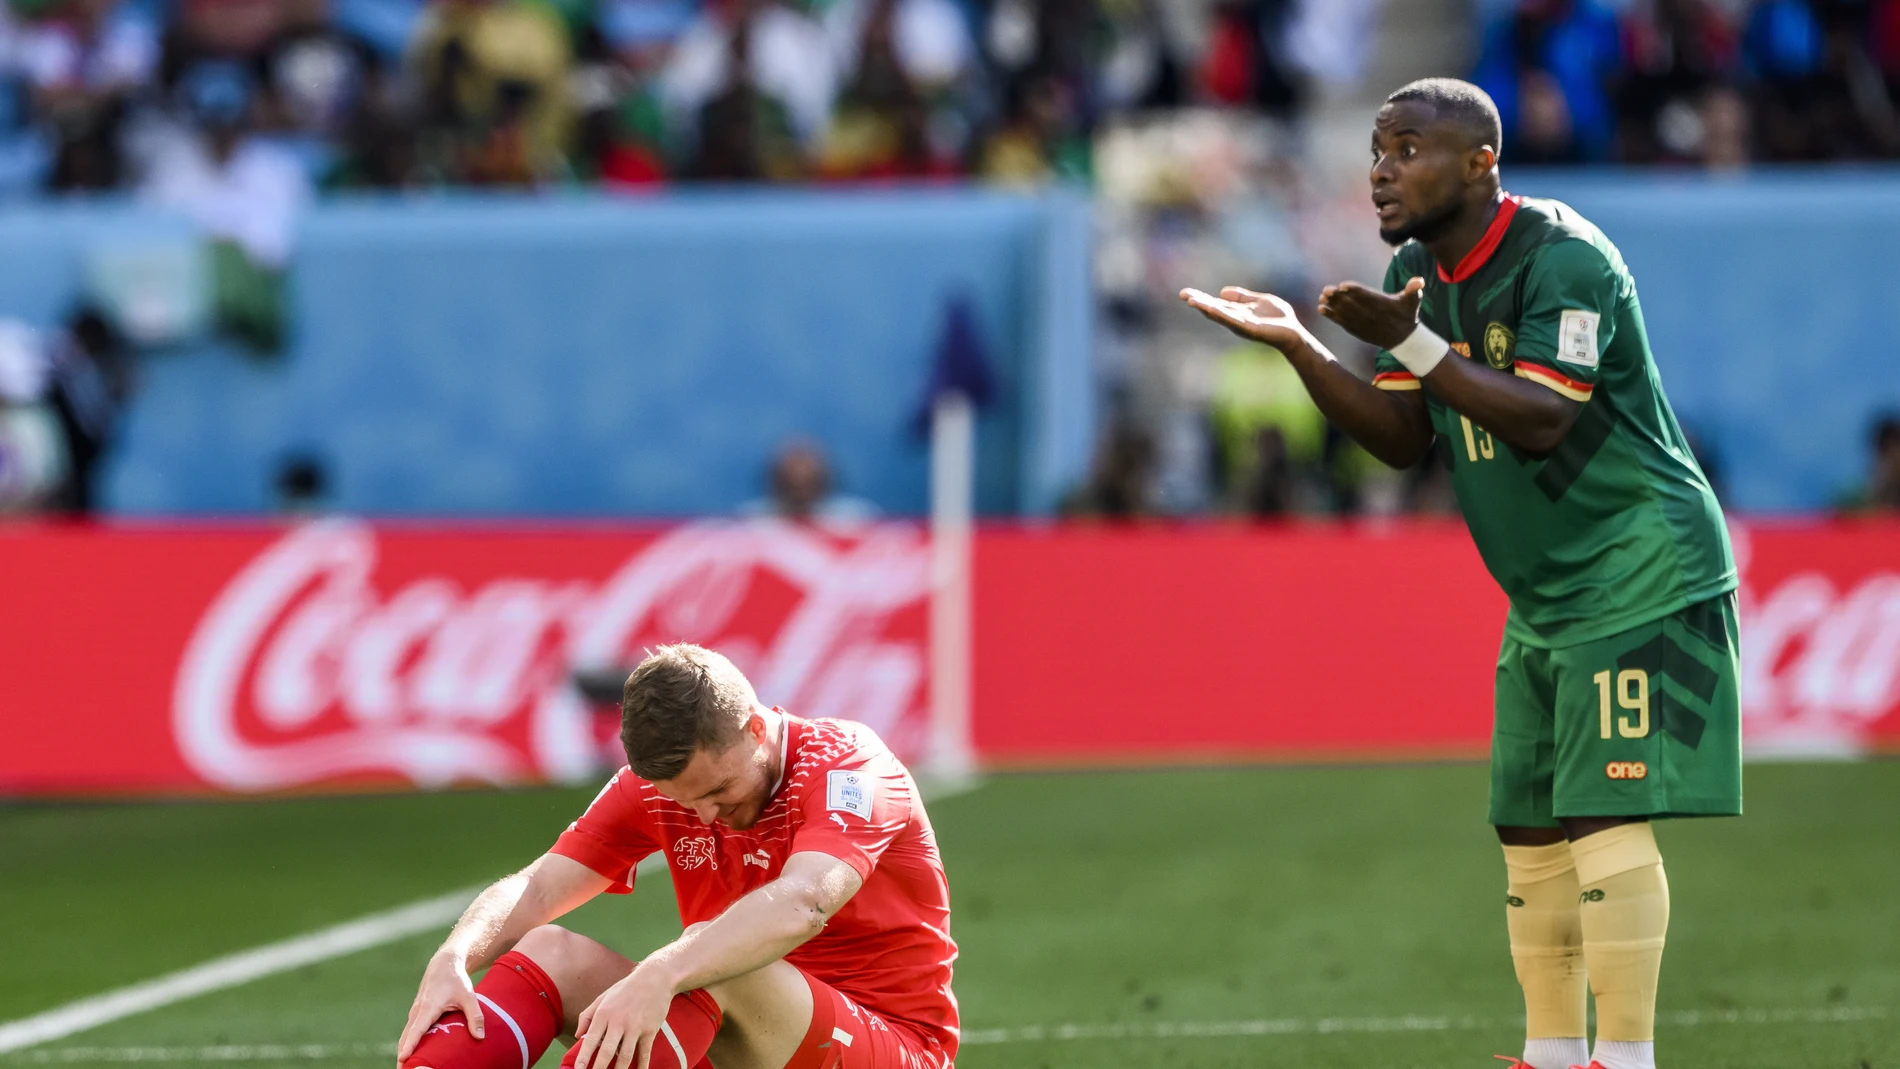 Una acción del partido entre Suiza y Camerún